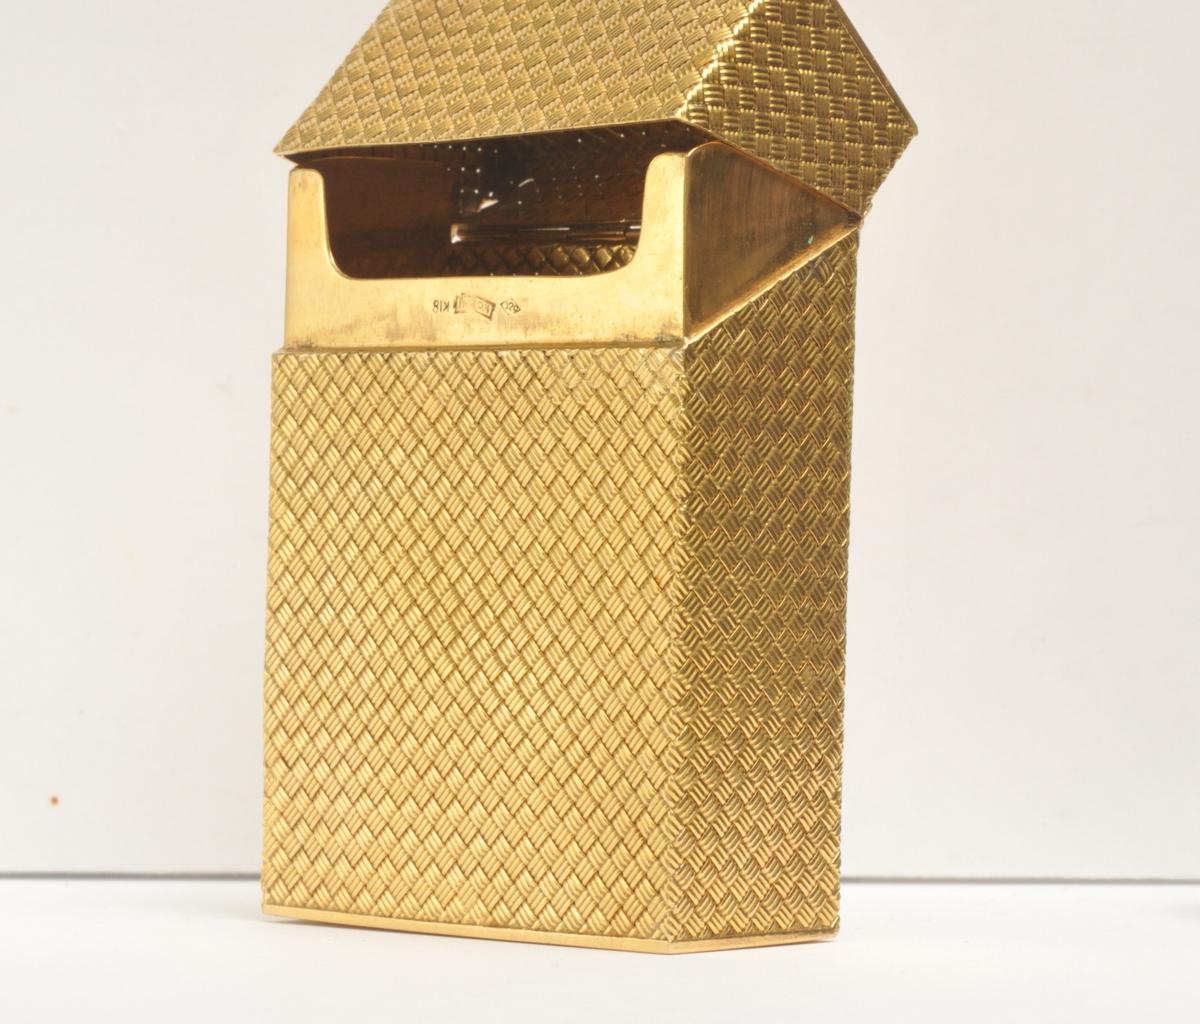 18k solid gold cigarette case